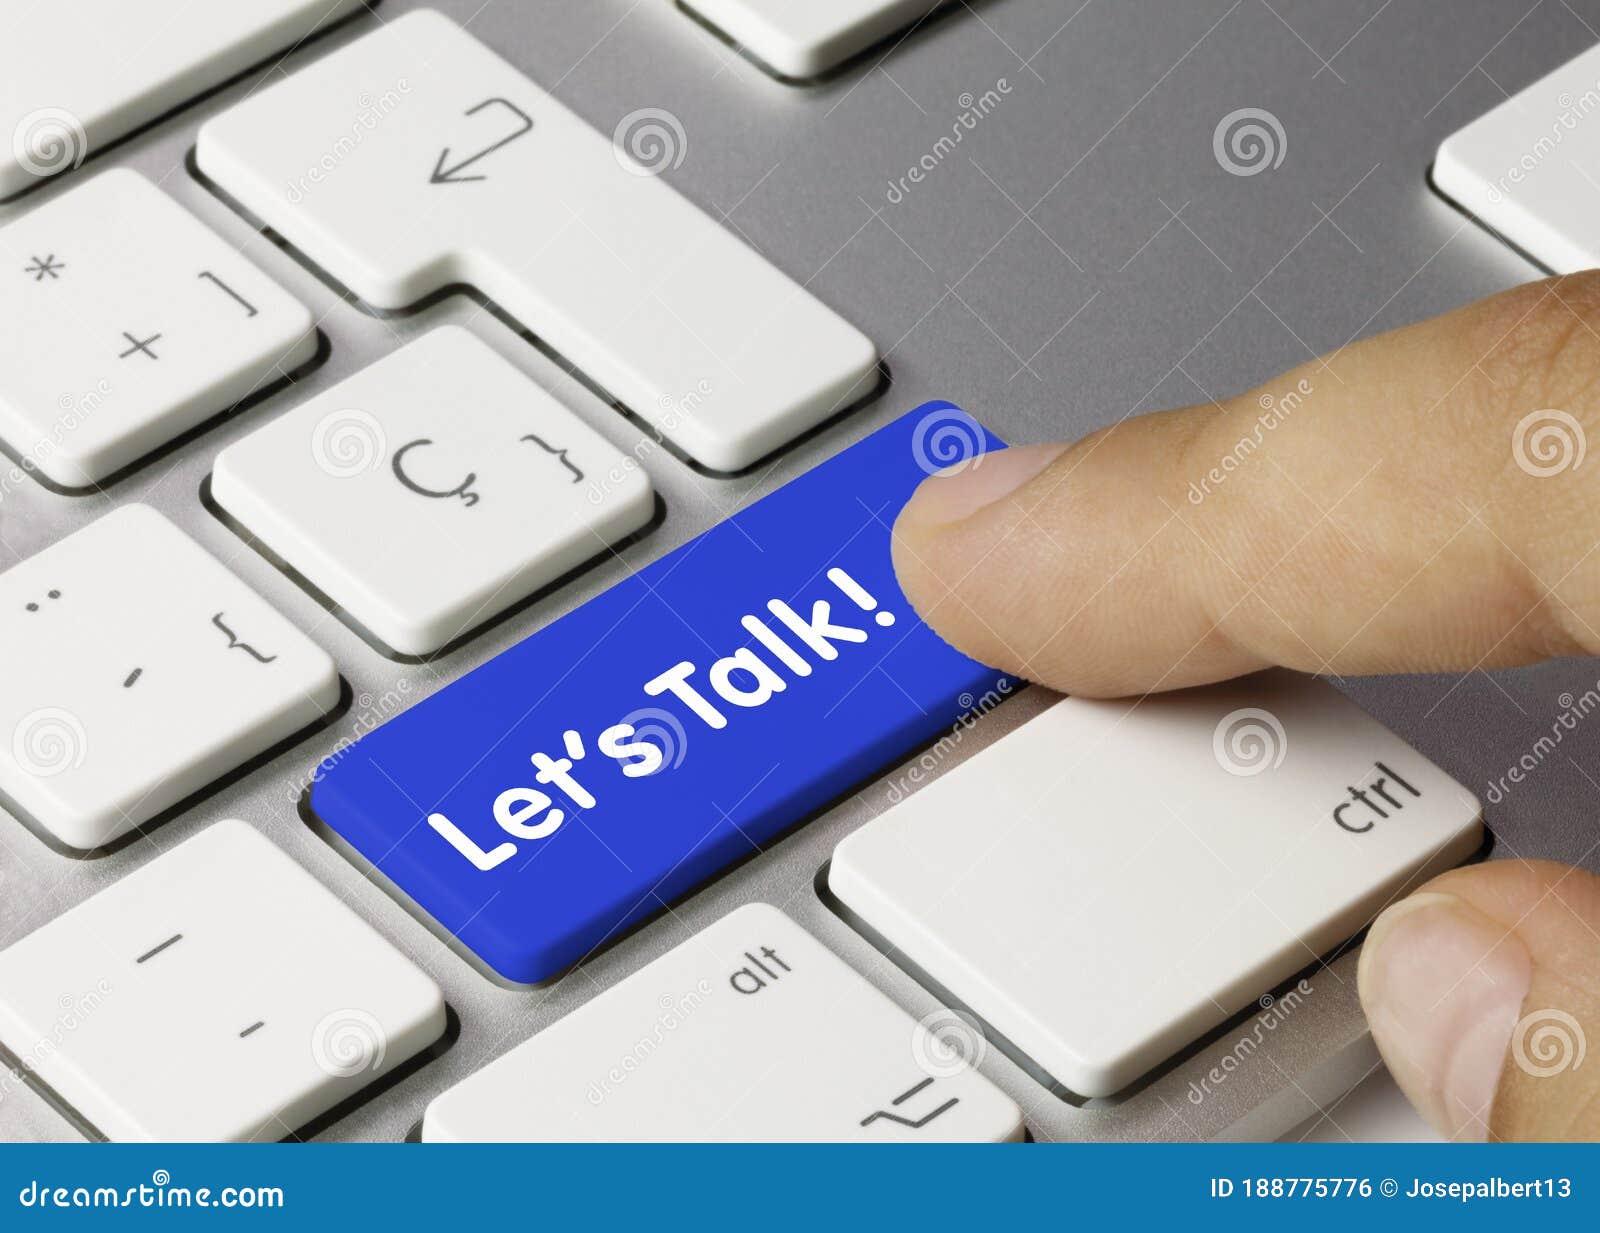 let`s talk! - inscription on blue keyboard key